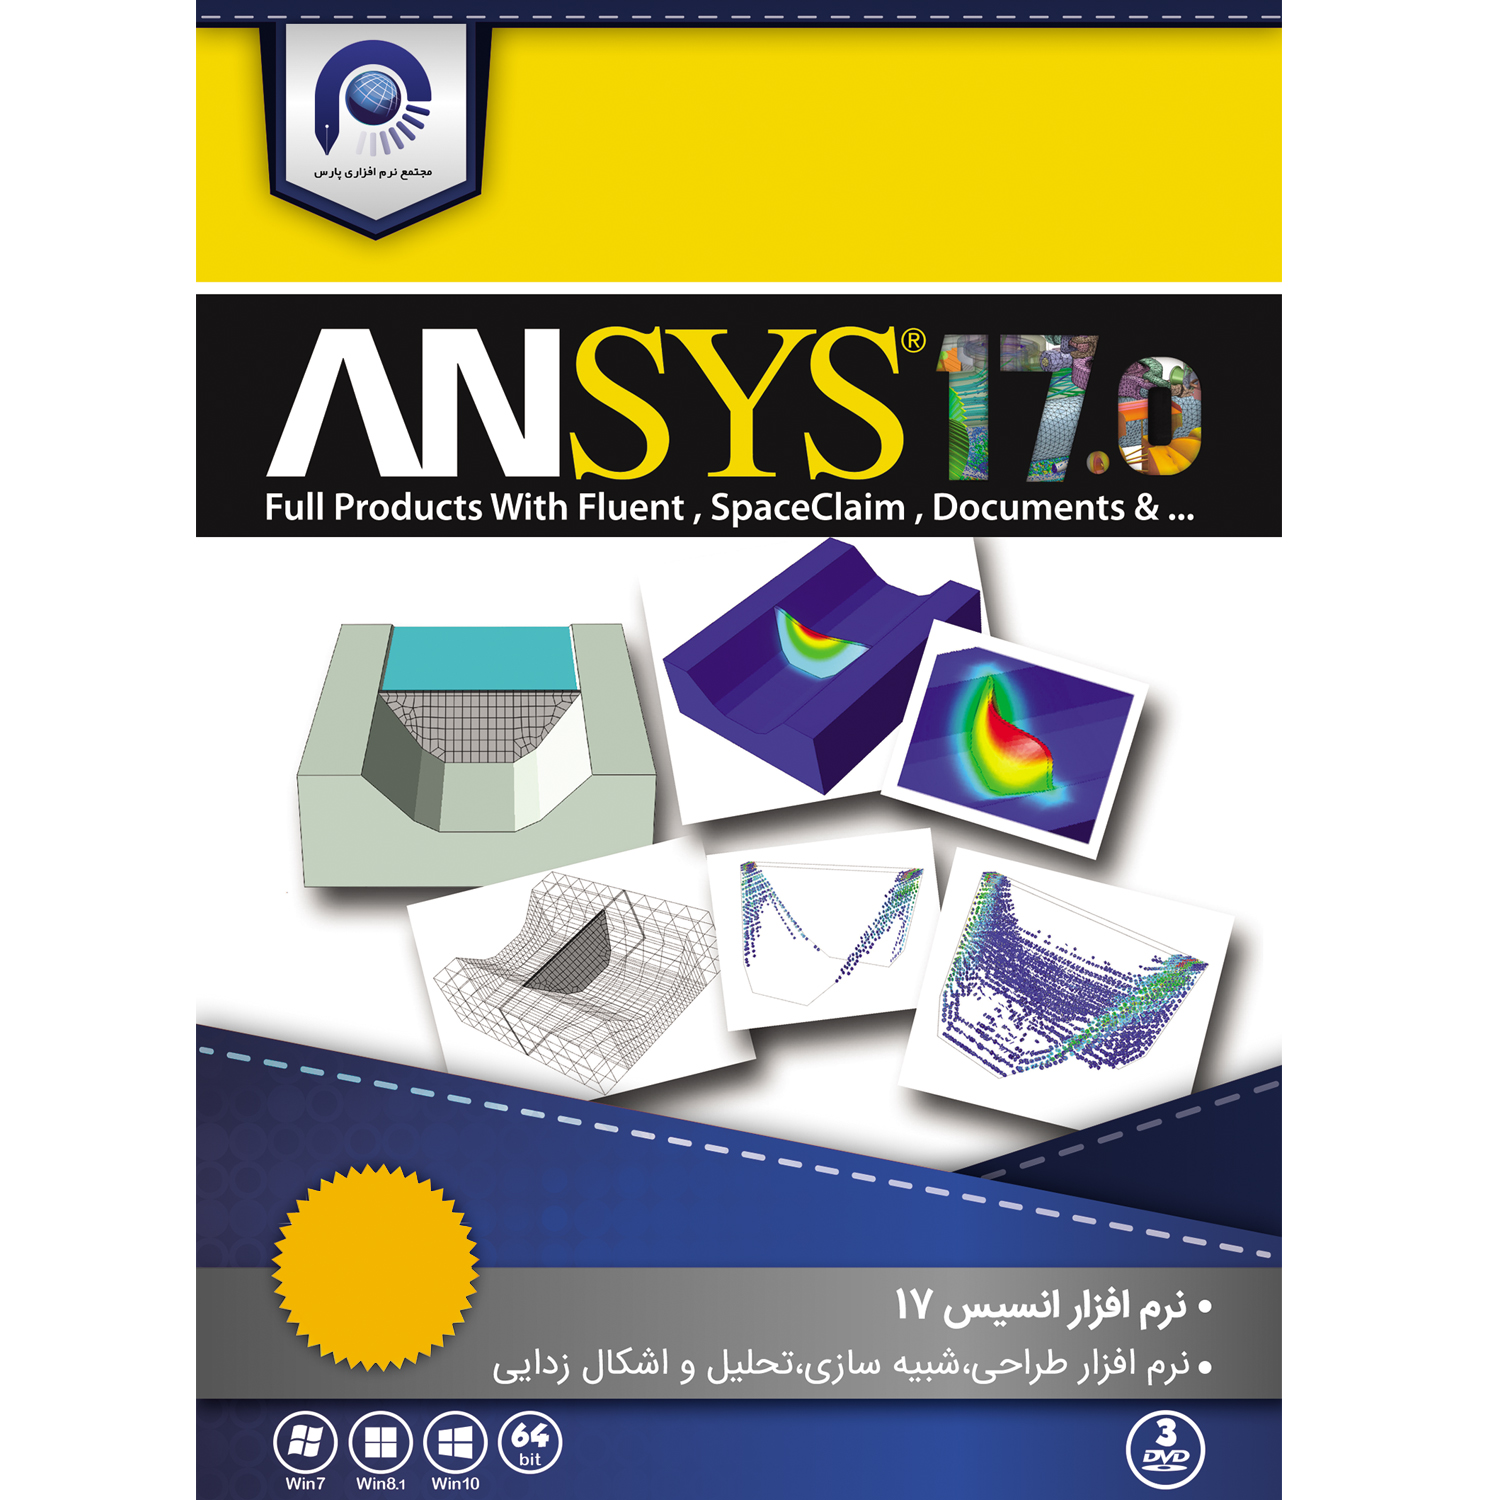 نرم افزار Ansys 17 نسخه 64 بیتی نشر مجتمع نرم افزاری پارس